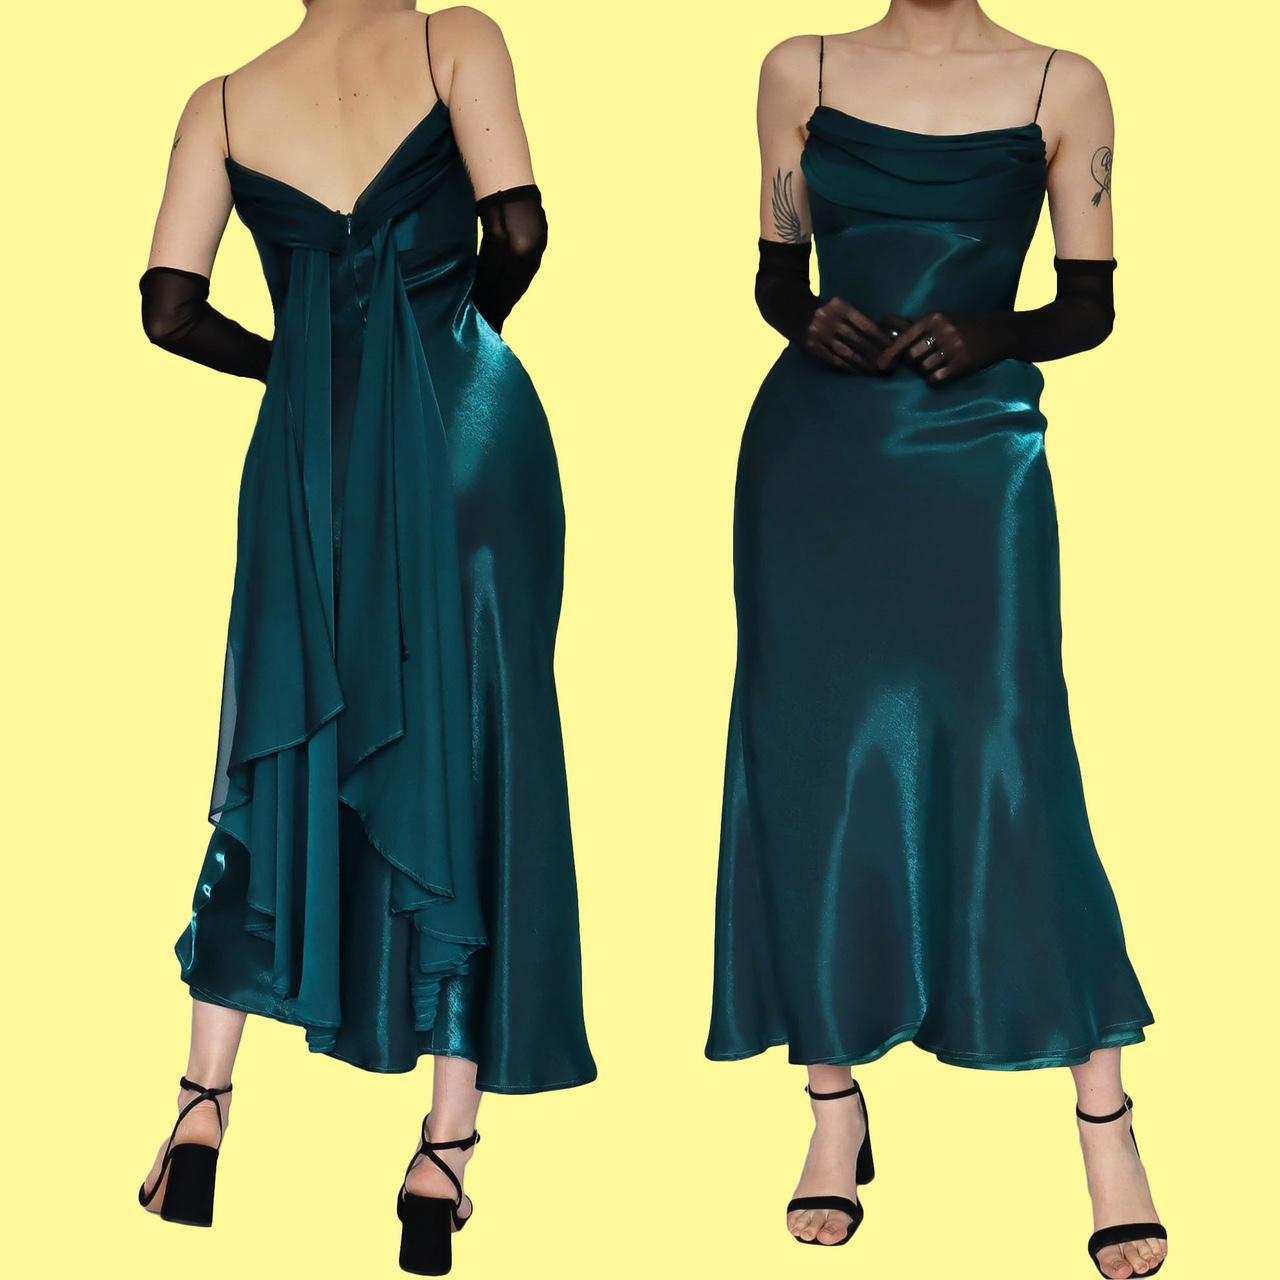 Women's Blue and Green Dress | Depop